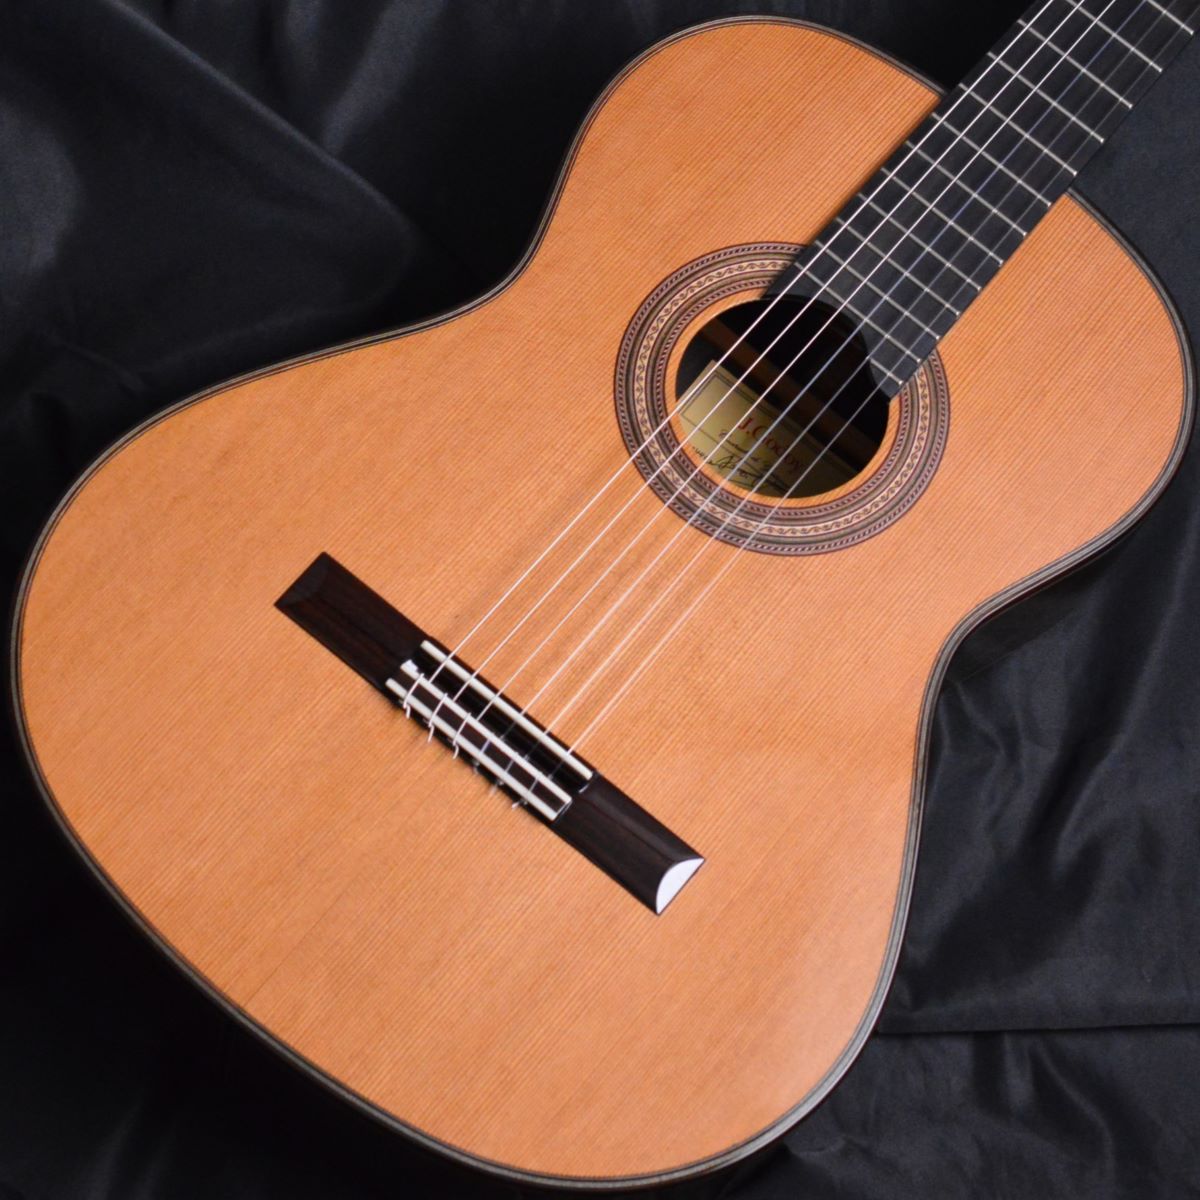 Chelldee チェルディ アコースティックギター 型番不明 楽器 ギター 